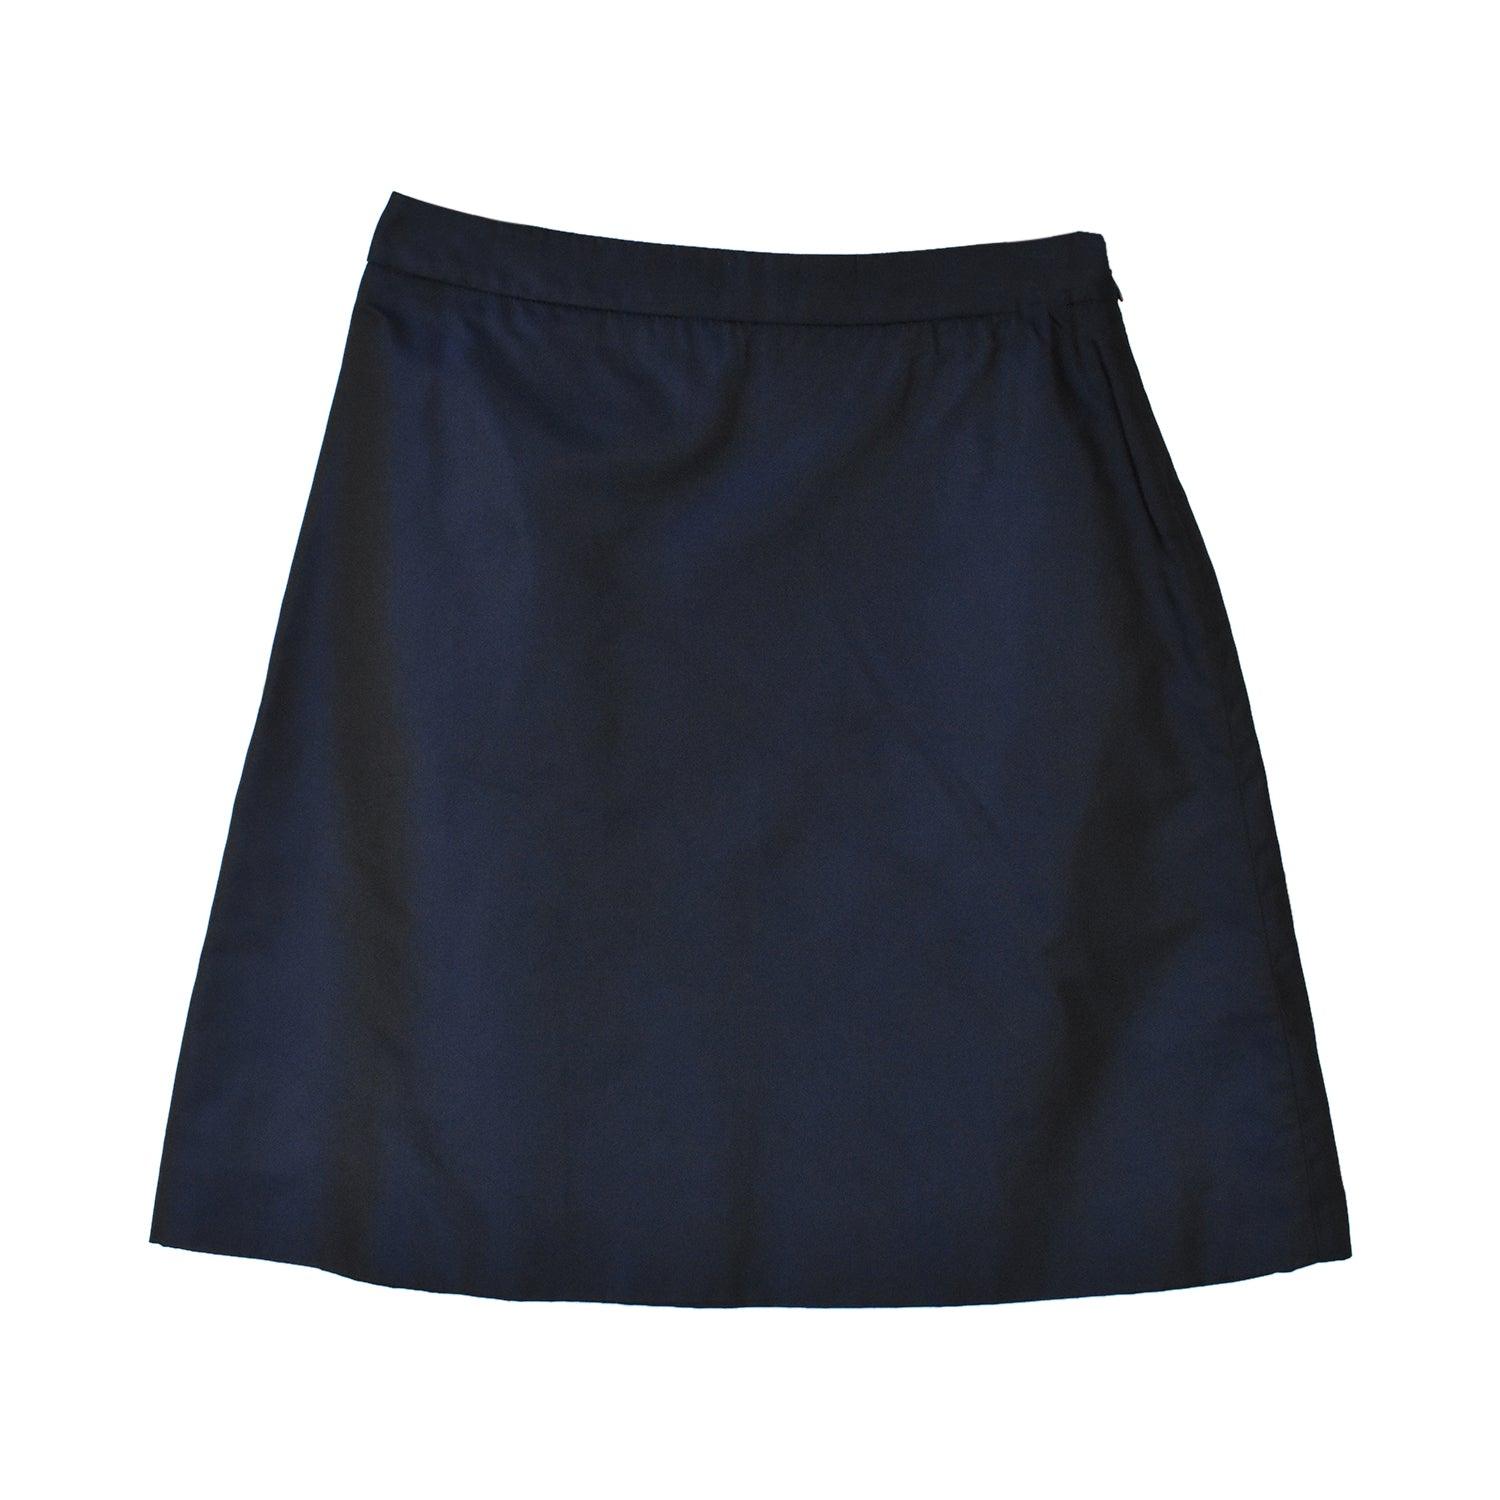 Miu Miu A-Line Skirt - Women's 38 - Fashionably Yours